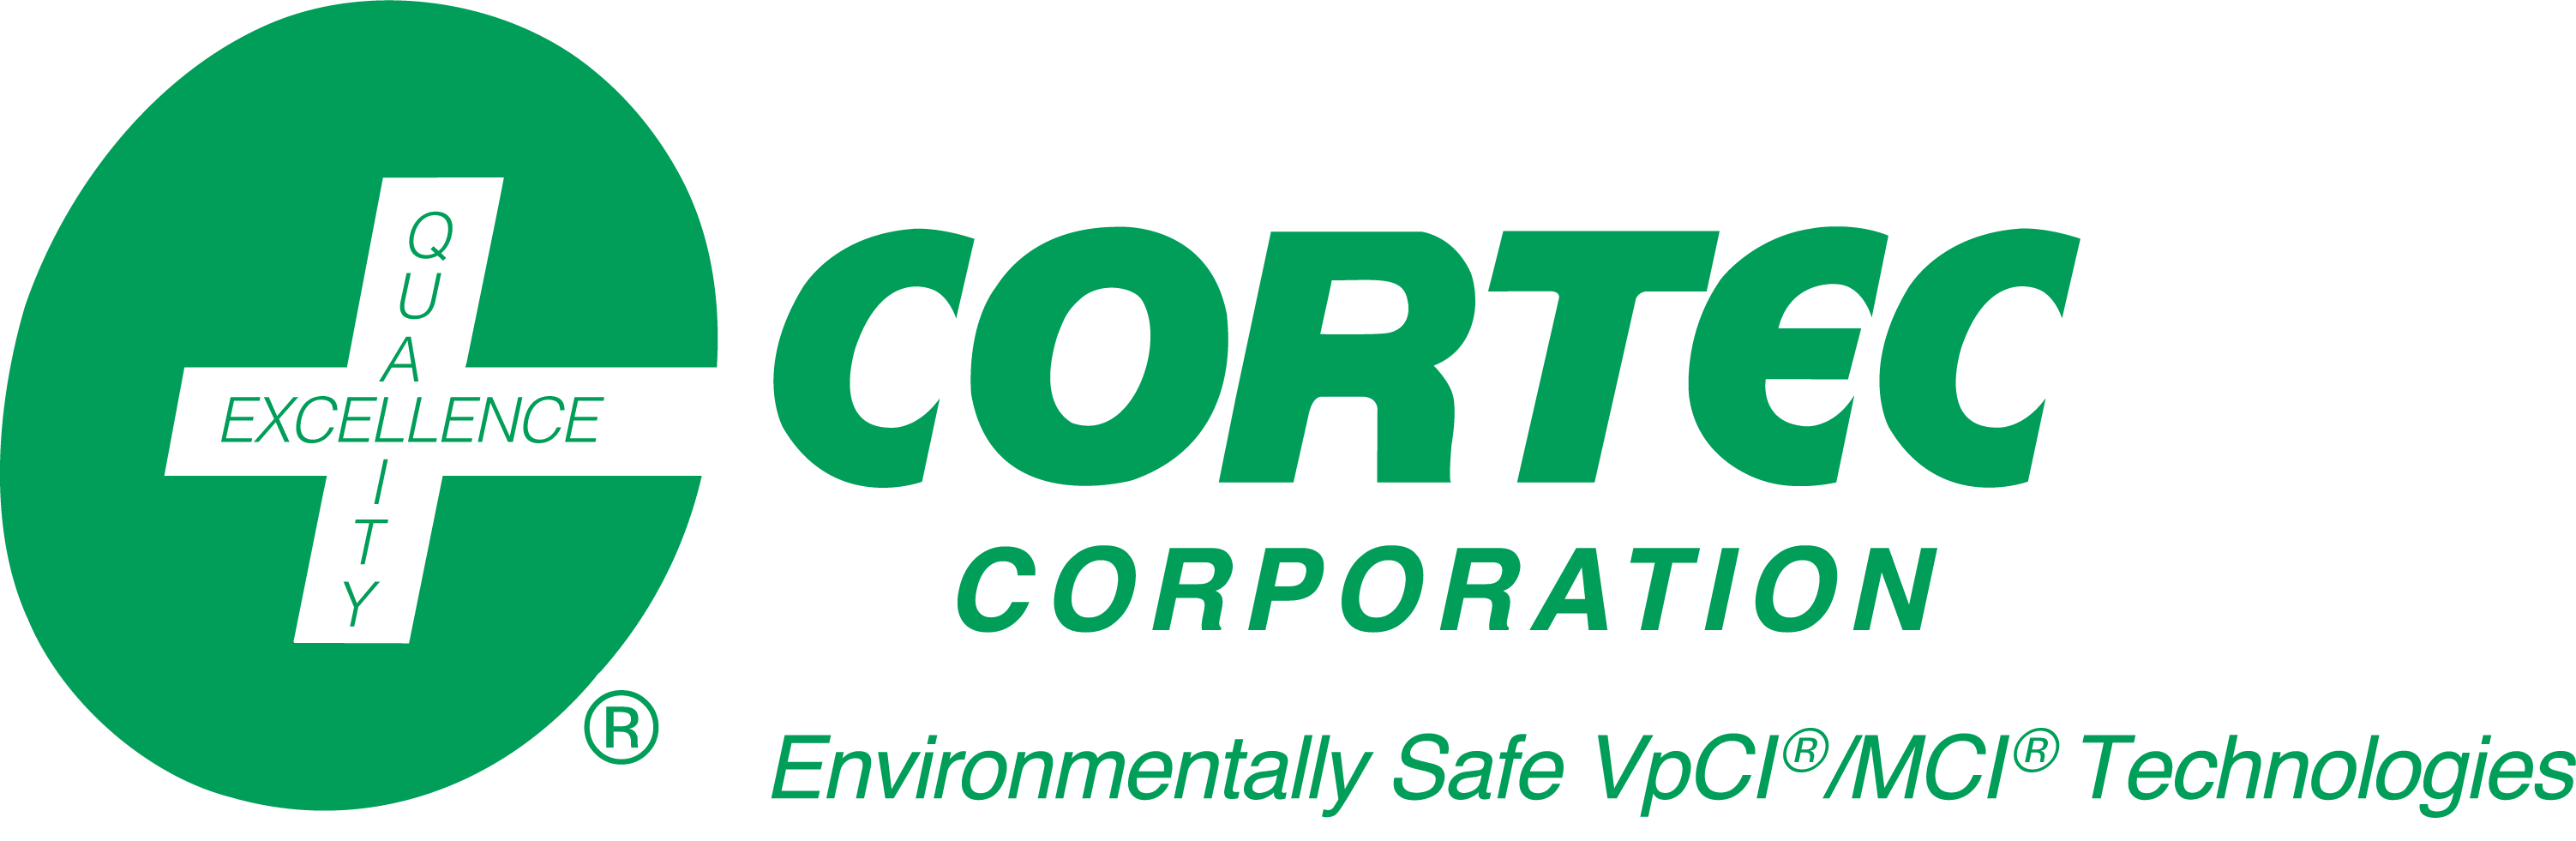 Cortec Automotive Industry